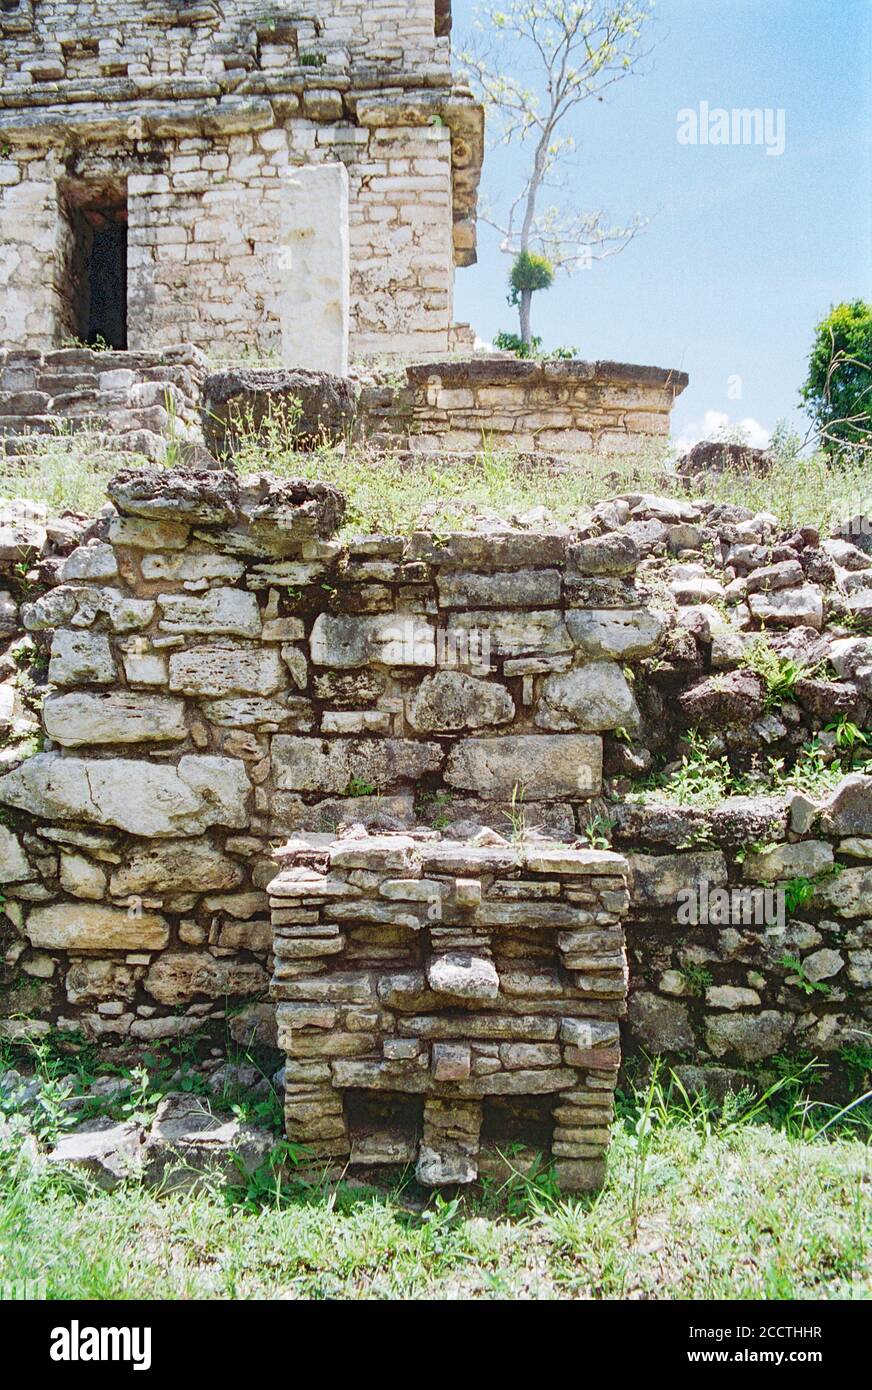 Unidentited kleine Struktur an der Basis der Struktur XXXXI 41 in der südlichen Akropolis. Yaxchilan Maya Ruinen; Chiapas, Mexiko. Vintage Film Bild - ca. 1990. Stockfoto